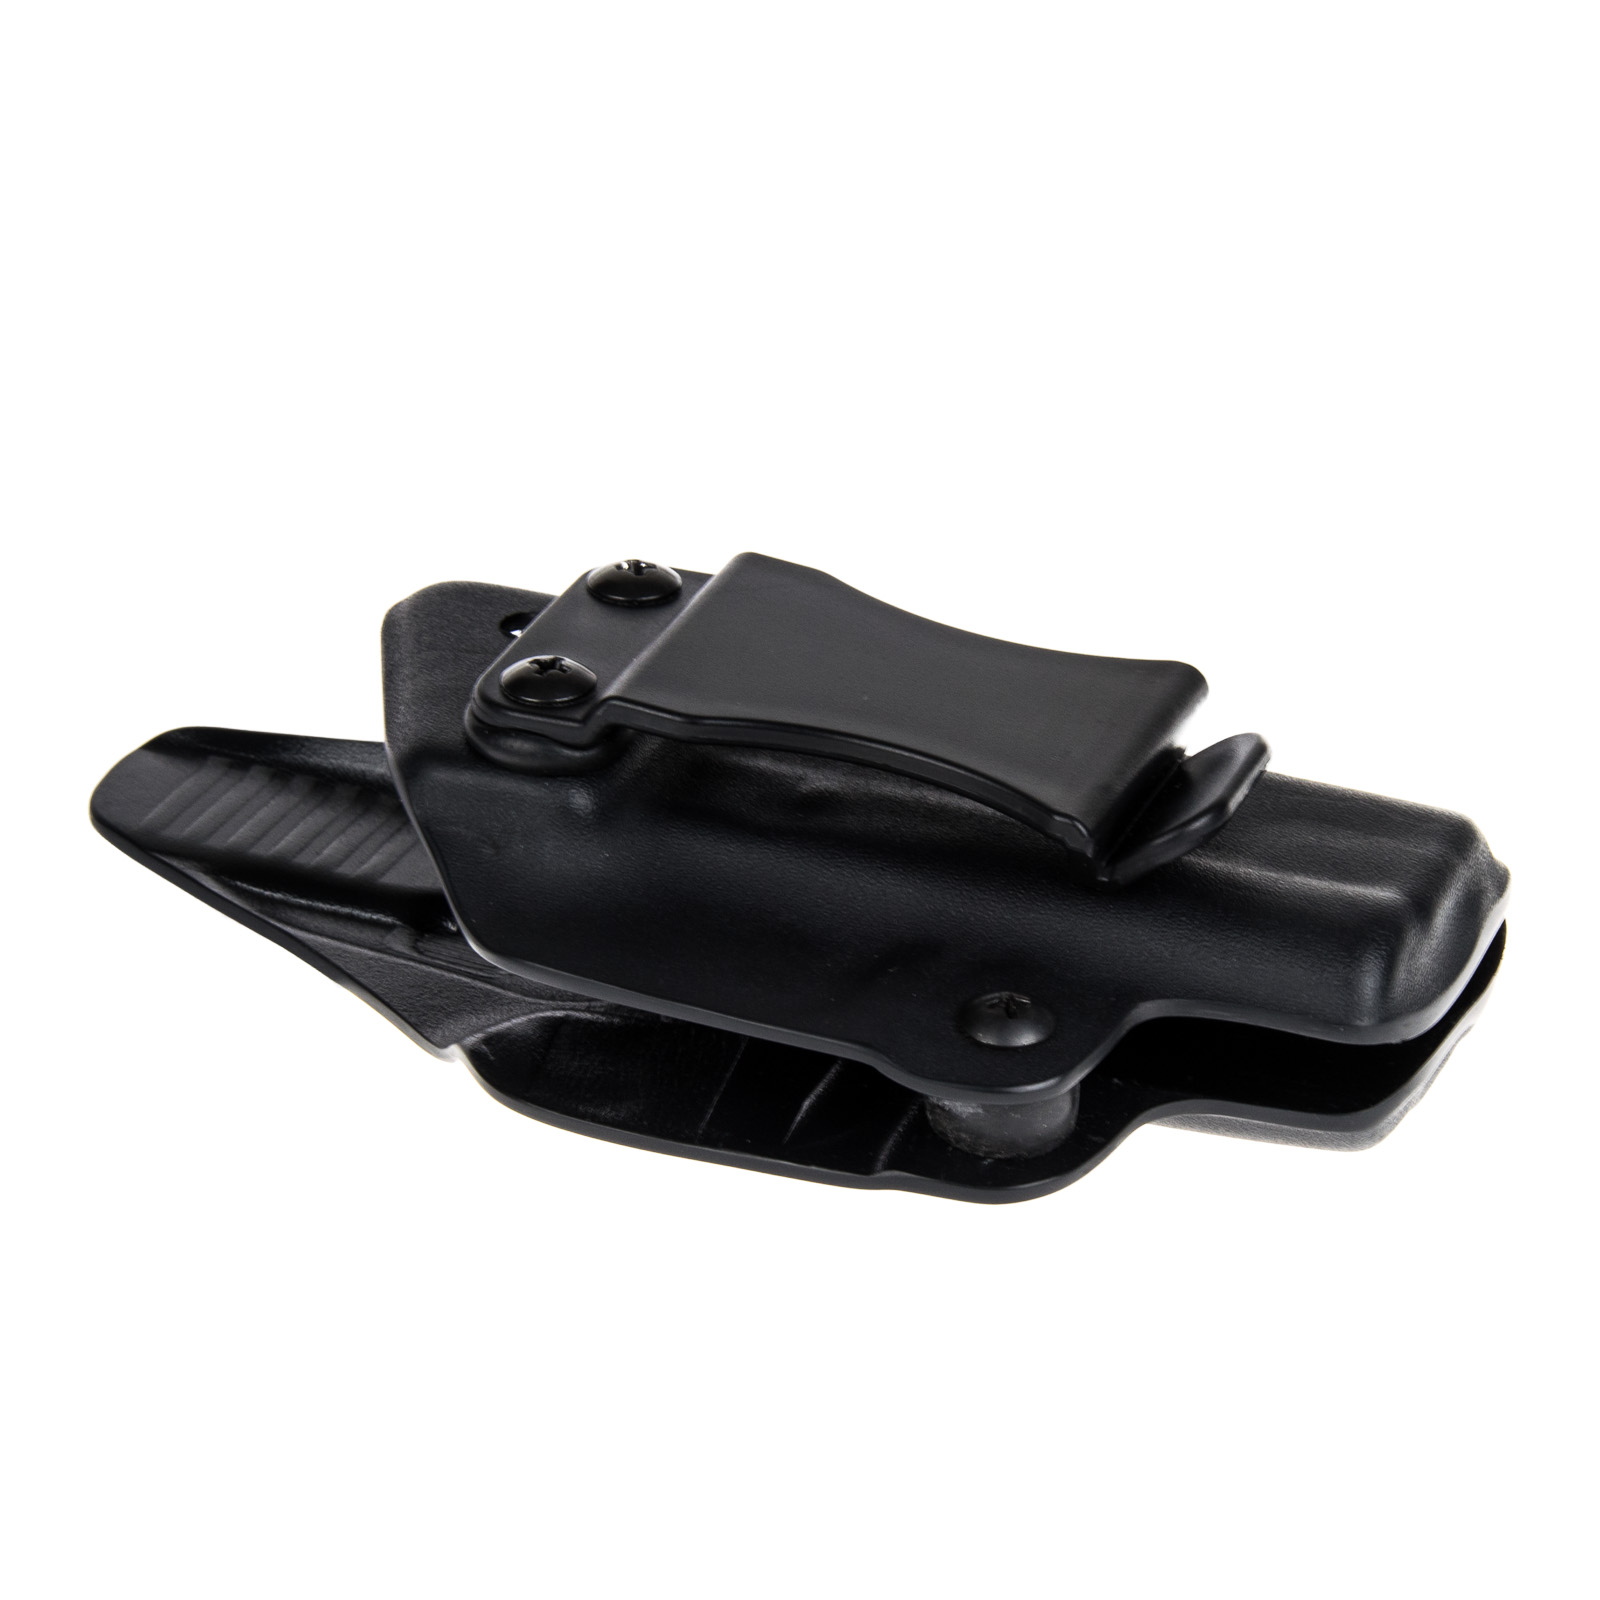 Vnitřní pouzdro RHholster, plný sweatguard, černá/černá (Sig Sauer P226 s railem)